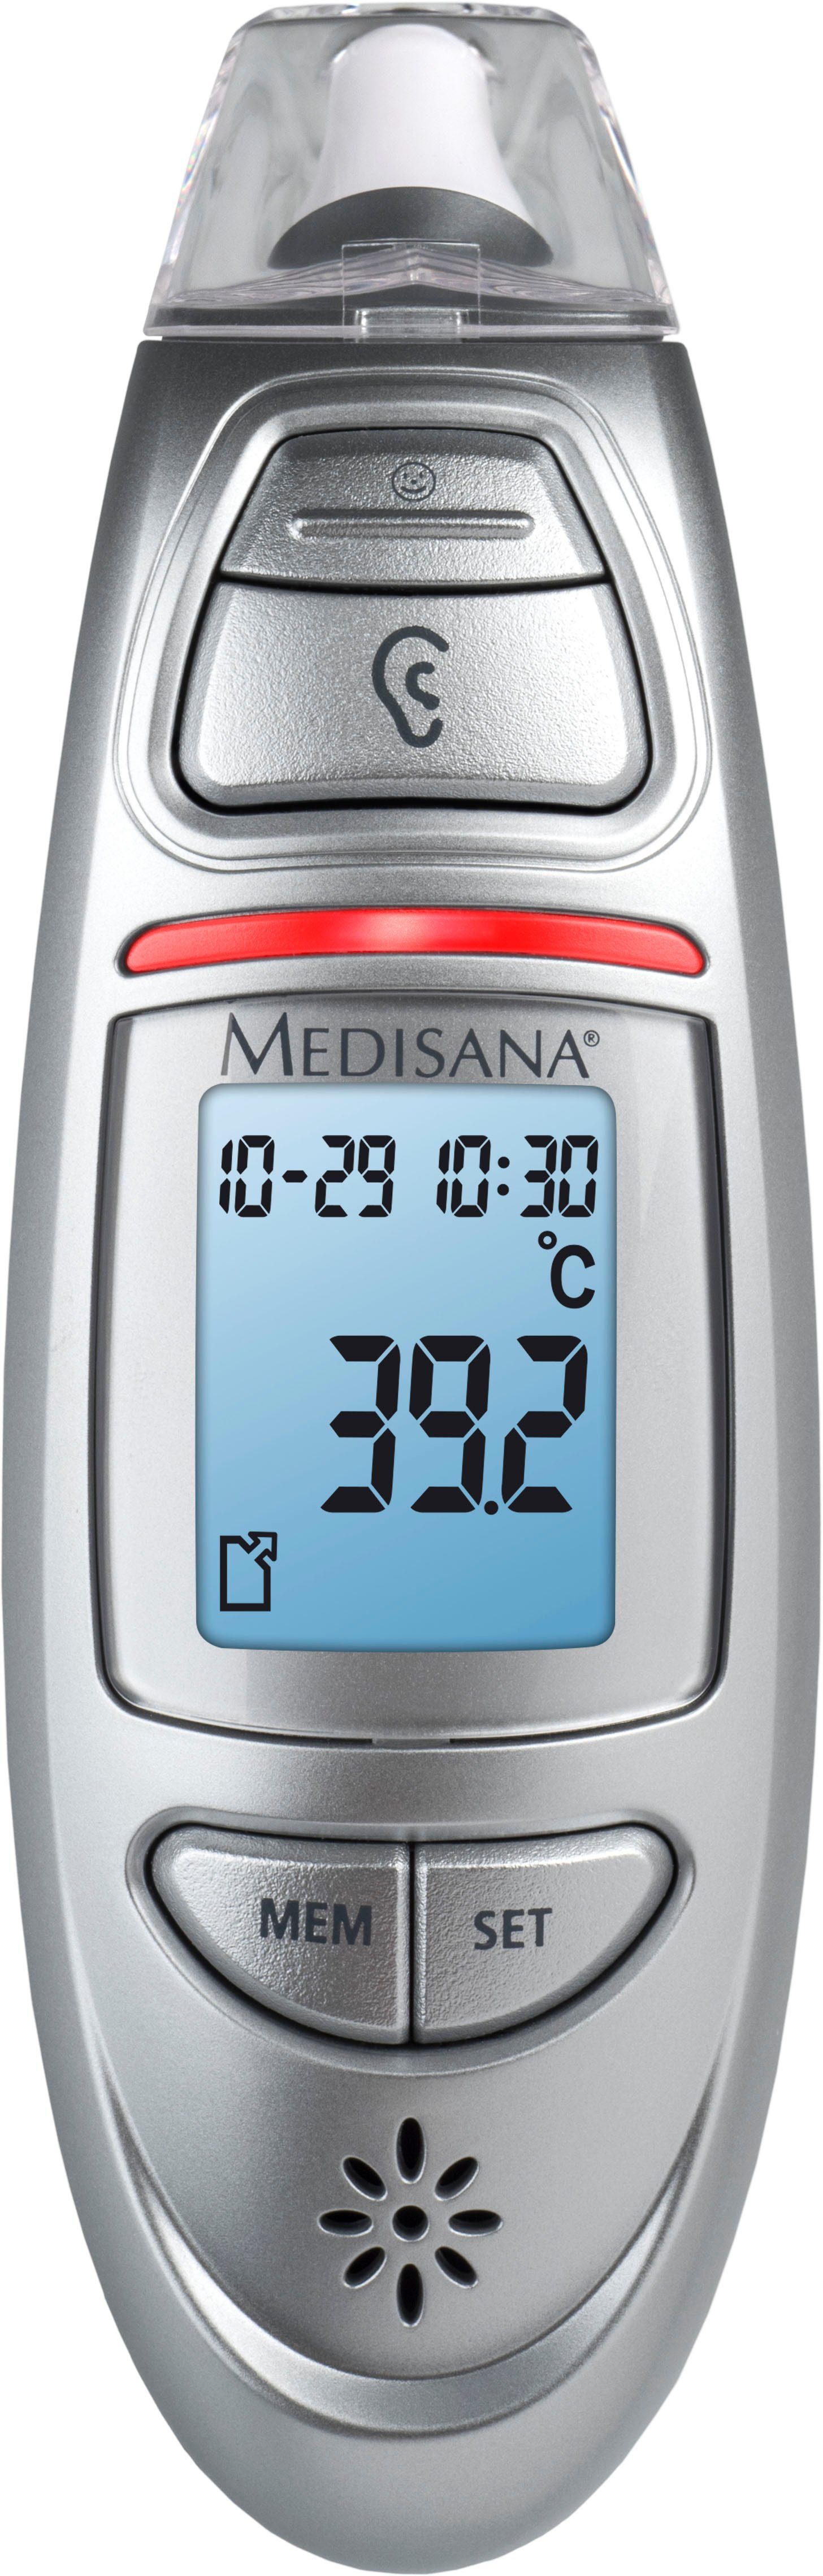 Medisana Fieberthermometer TM 750 Connect, Präzise, sekundenschnelle  Messung der Körpertemperatur an der Stirn und im Ohr